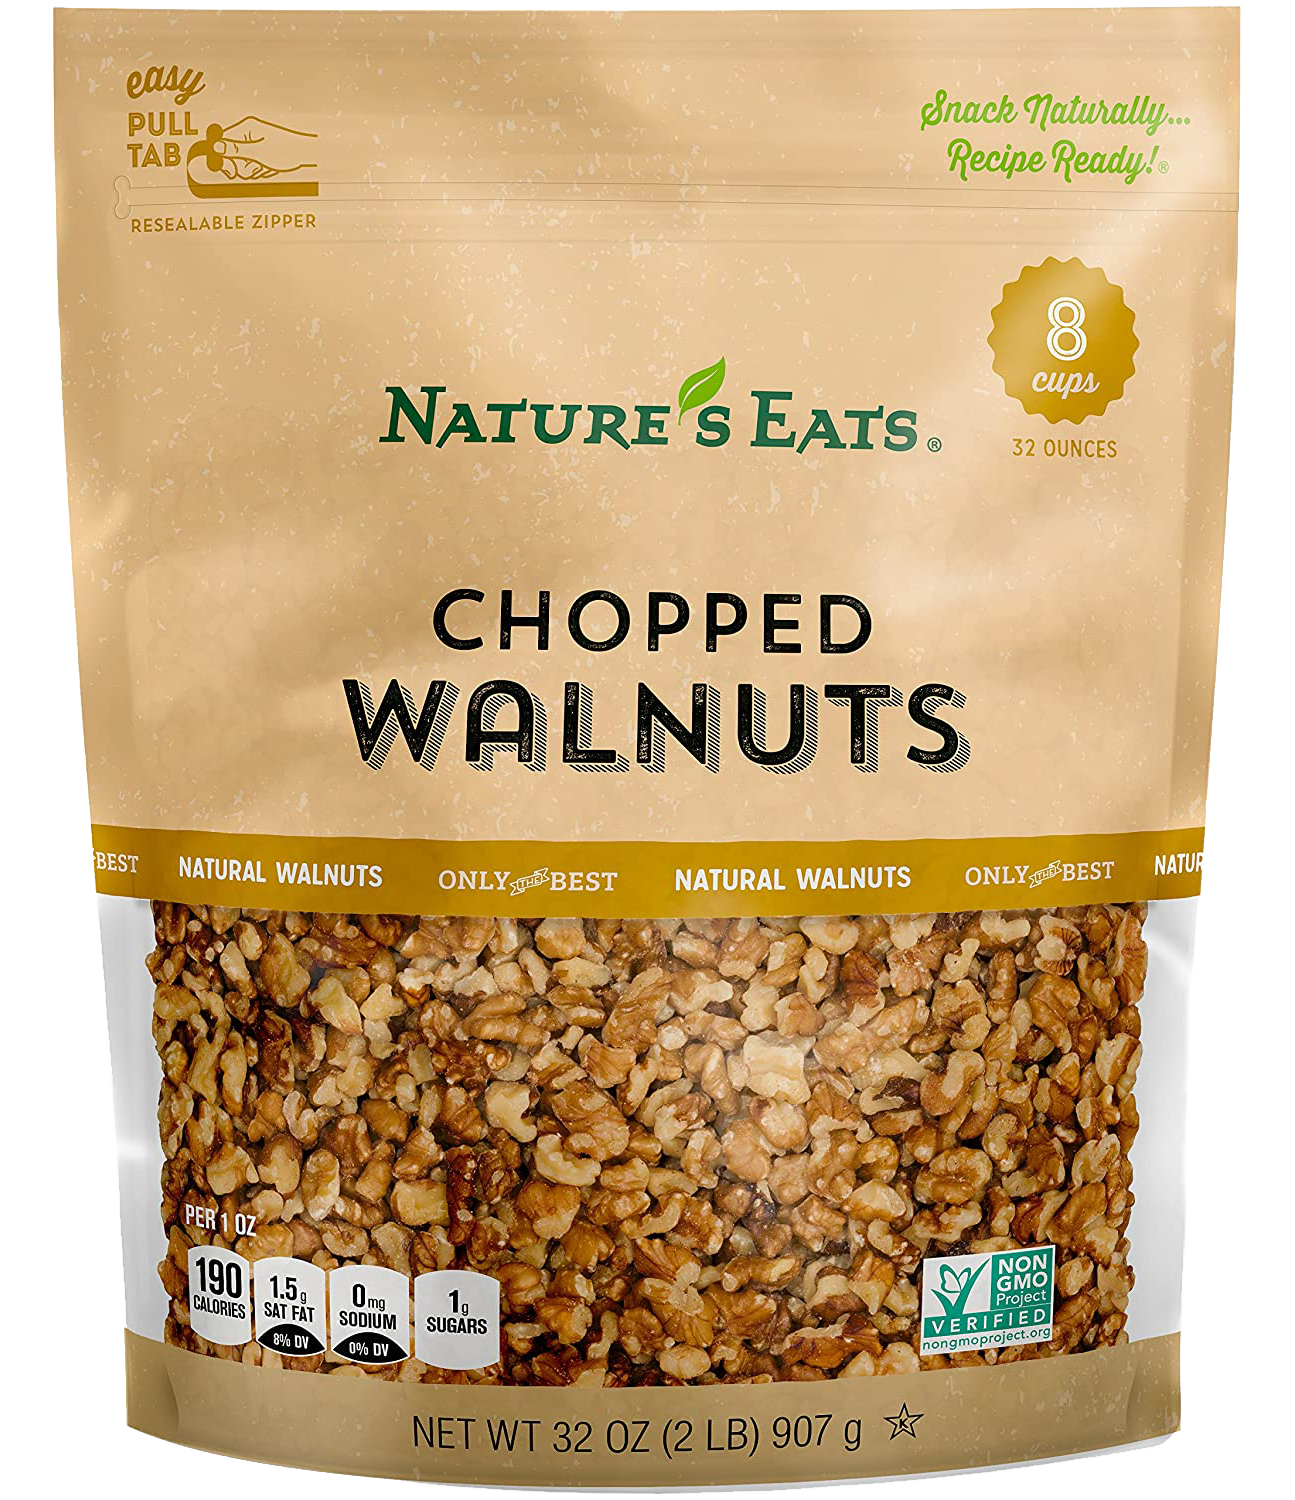 NaturesEats_ChoppedWalnuts